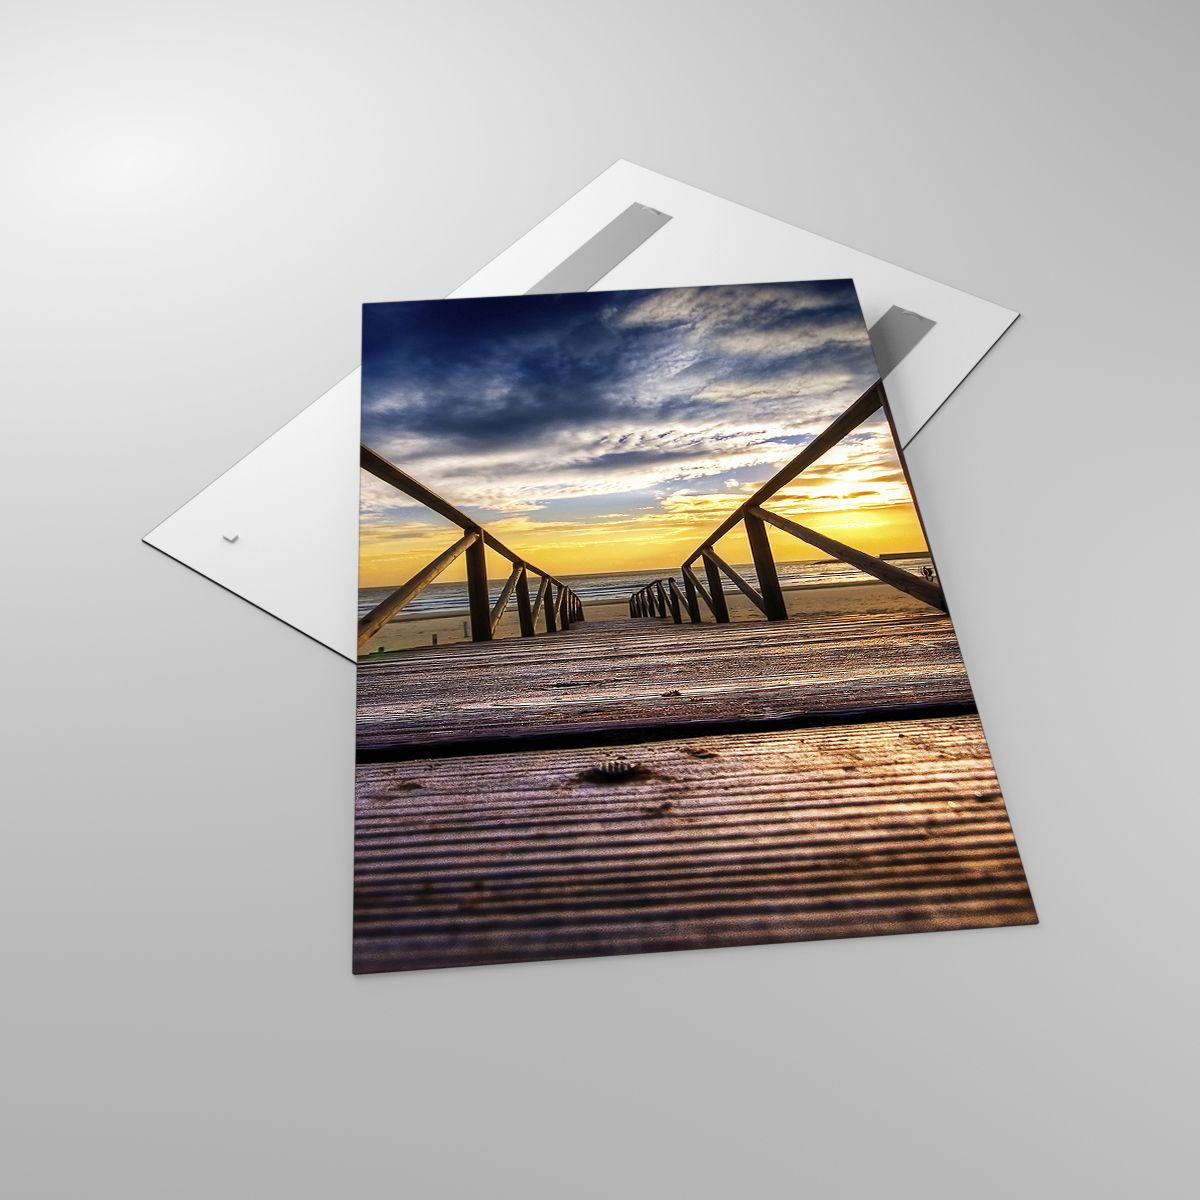 Glasbild Landschaft, Glasbild Der Sonnenuntergang, Glasbild Meer, Glasbild Natur, Glasbild Abstieg Zum Strand